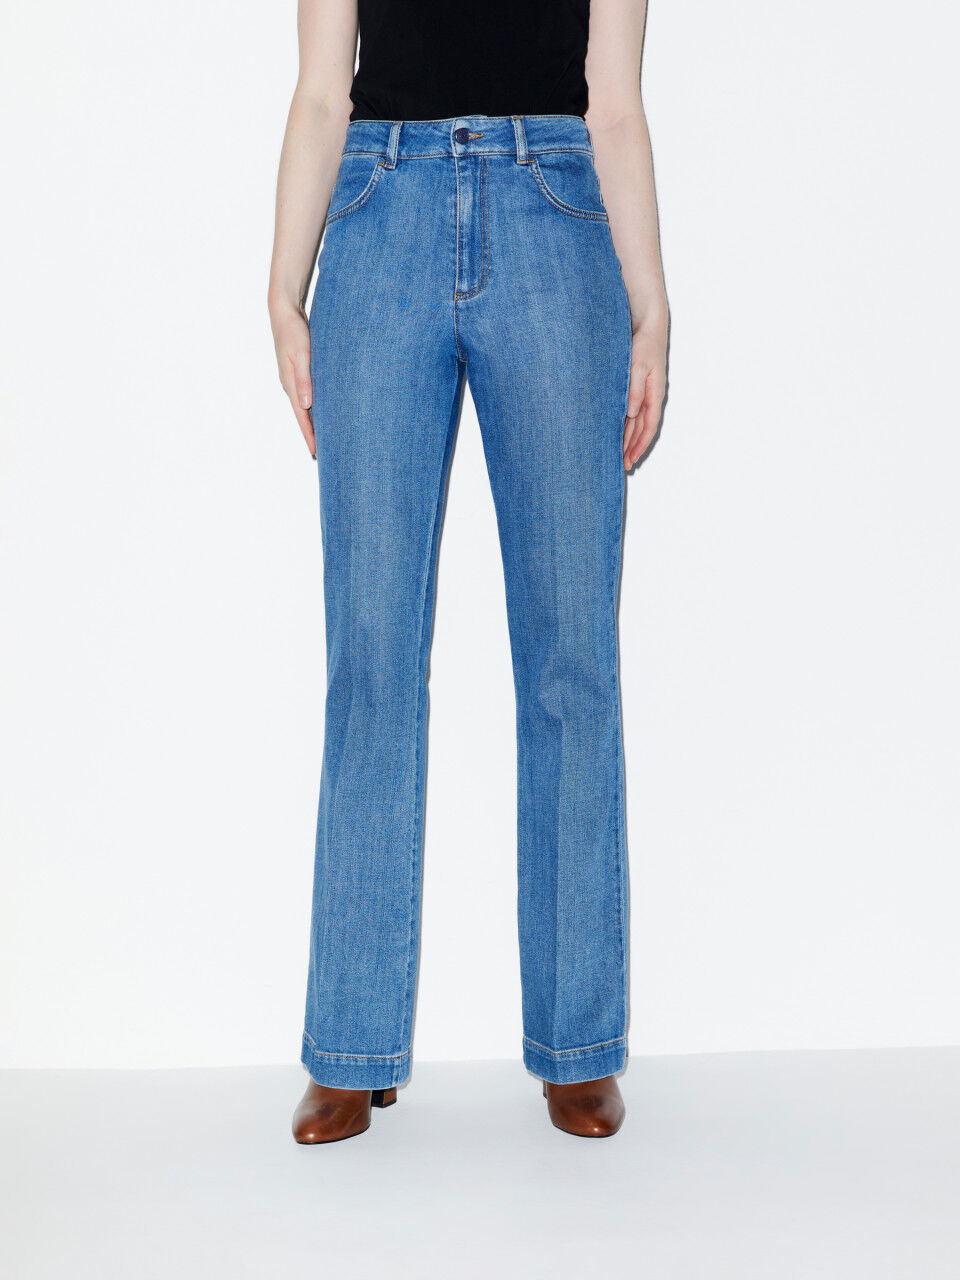 Jeans flared Franky a vita altaJ Brand in Denim di colore Nero 30% di sconto Donna Abbigliamento da Jeans da Jeans bootcut 